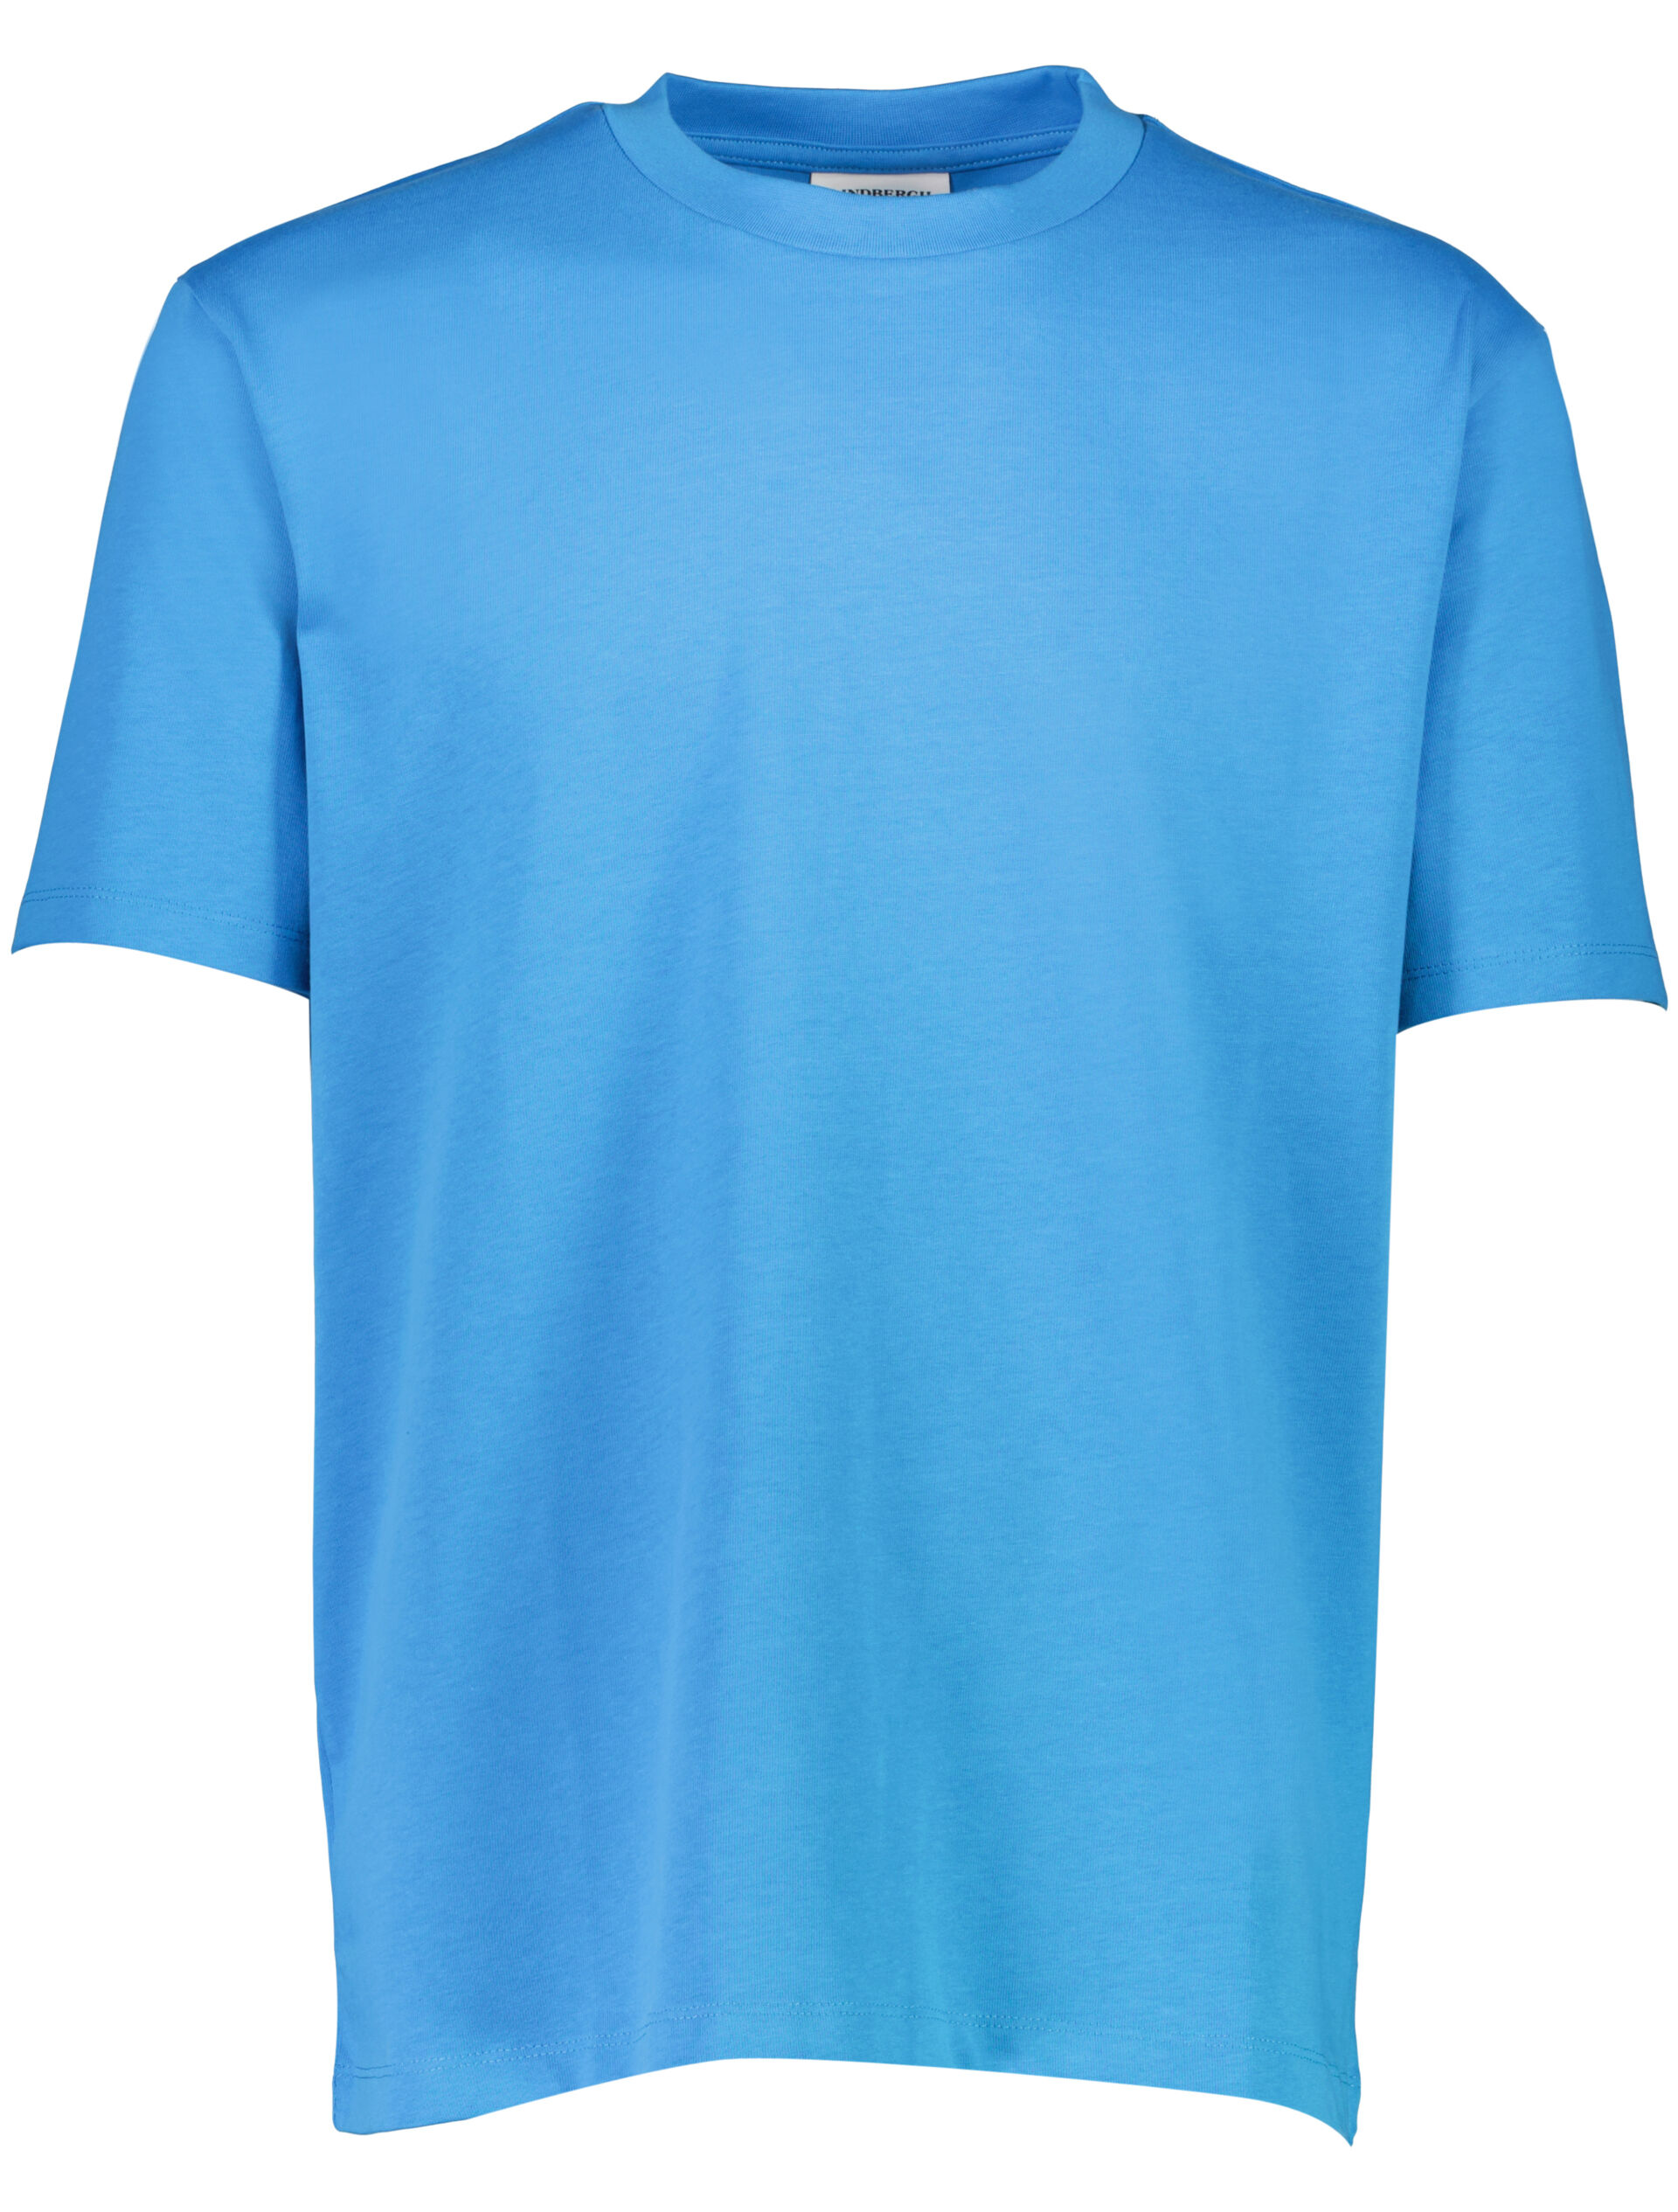 T-shirt T-shirt Blå 30-400120